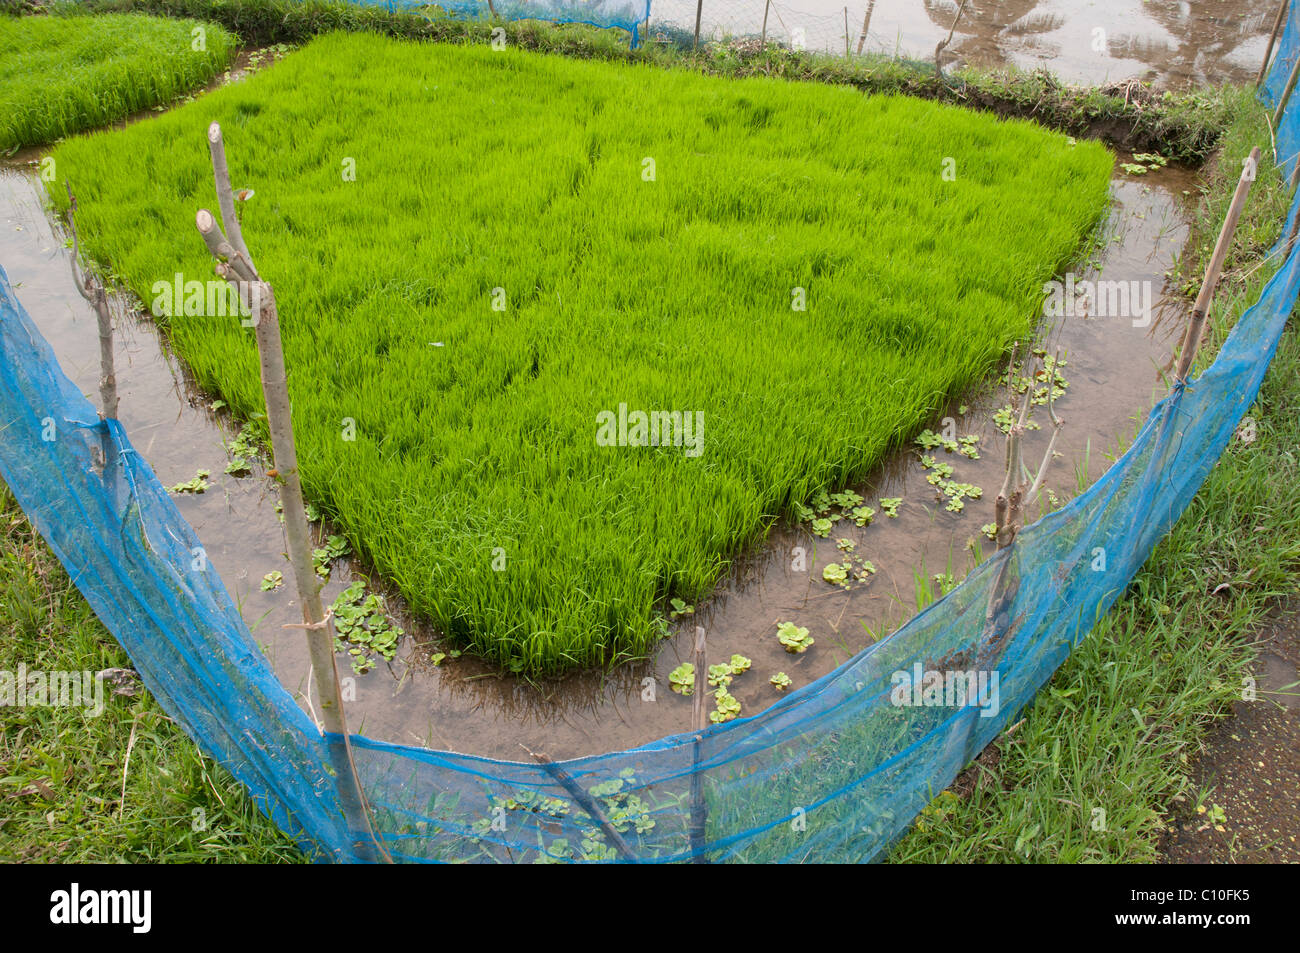 La coltivazione del riso a Bali Indonesia Foto Stock